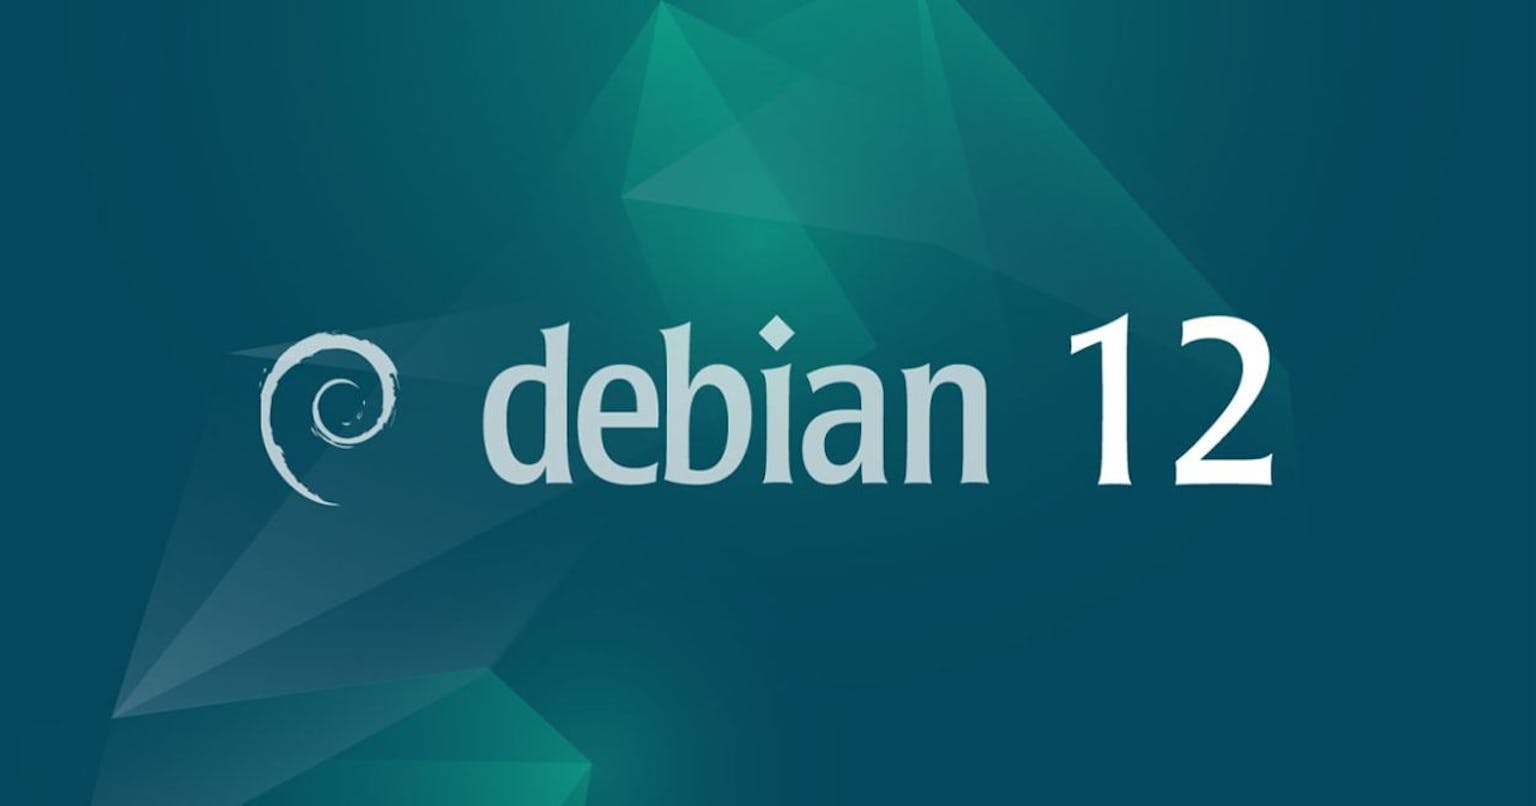 Debian Logo, Schriftzug "Debian 12", blau-grüner Hintergrund